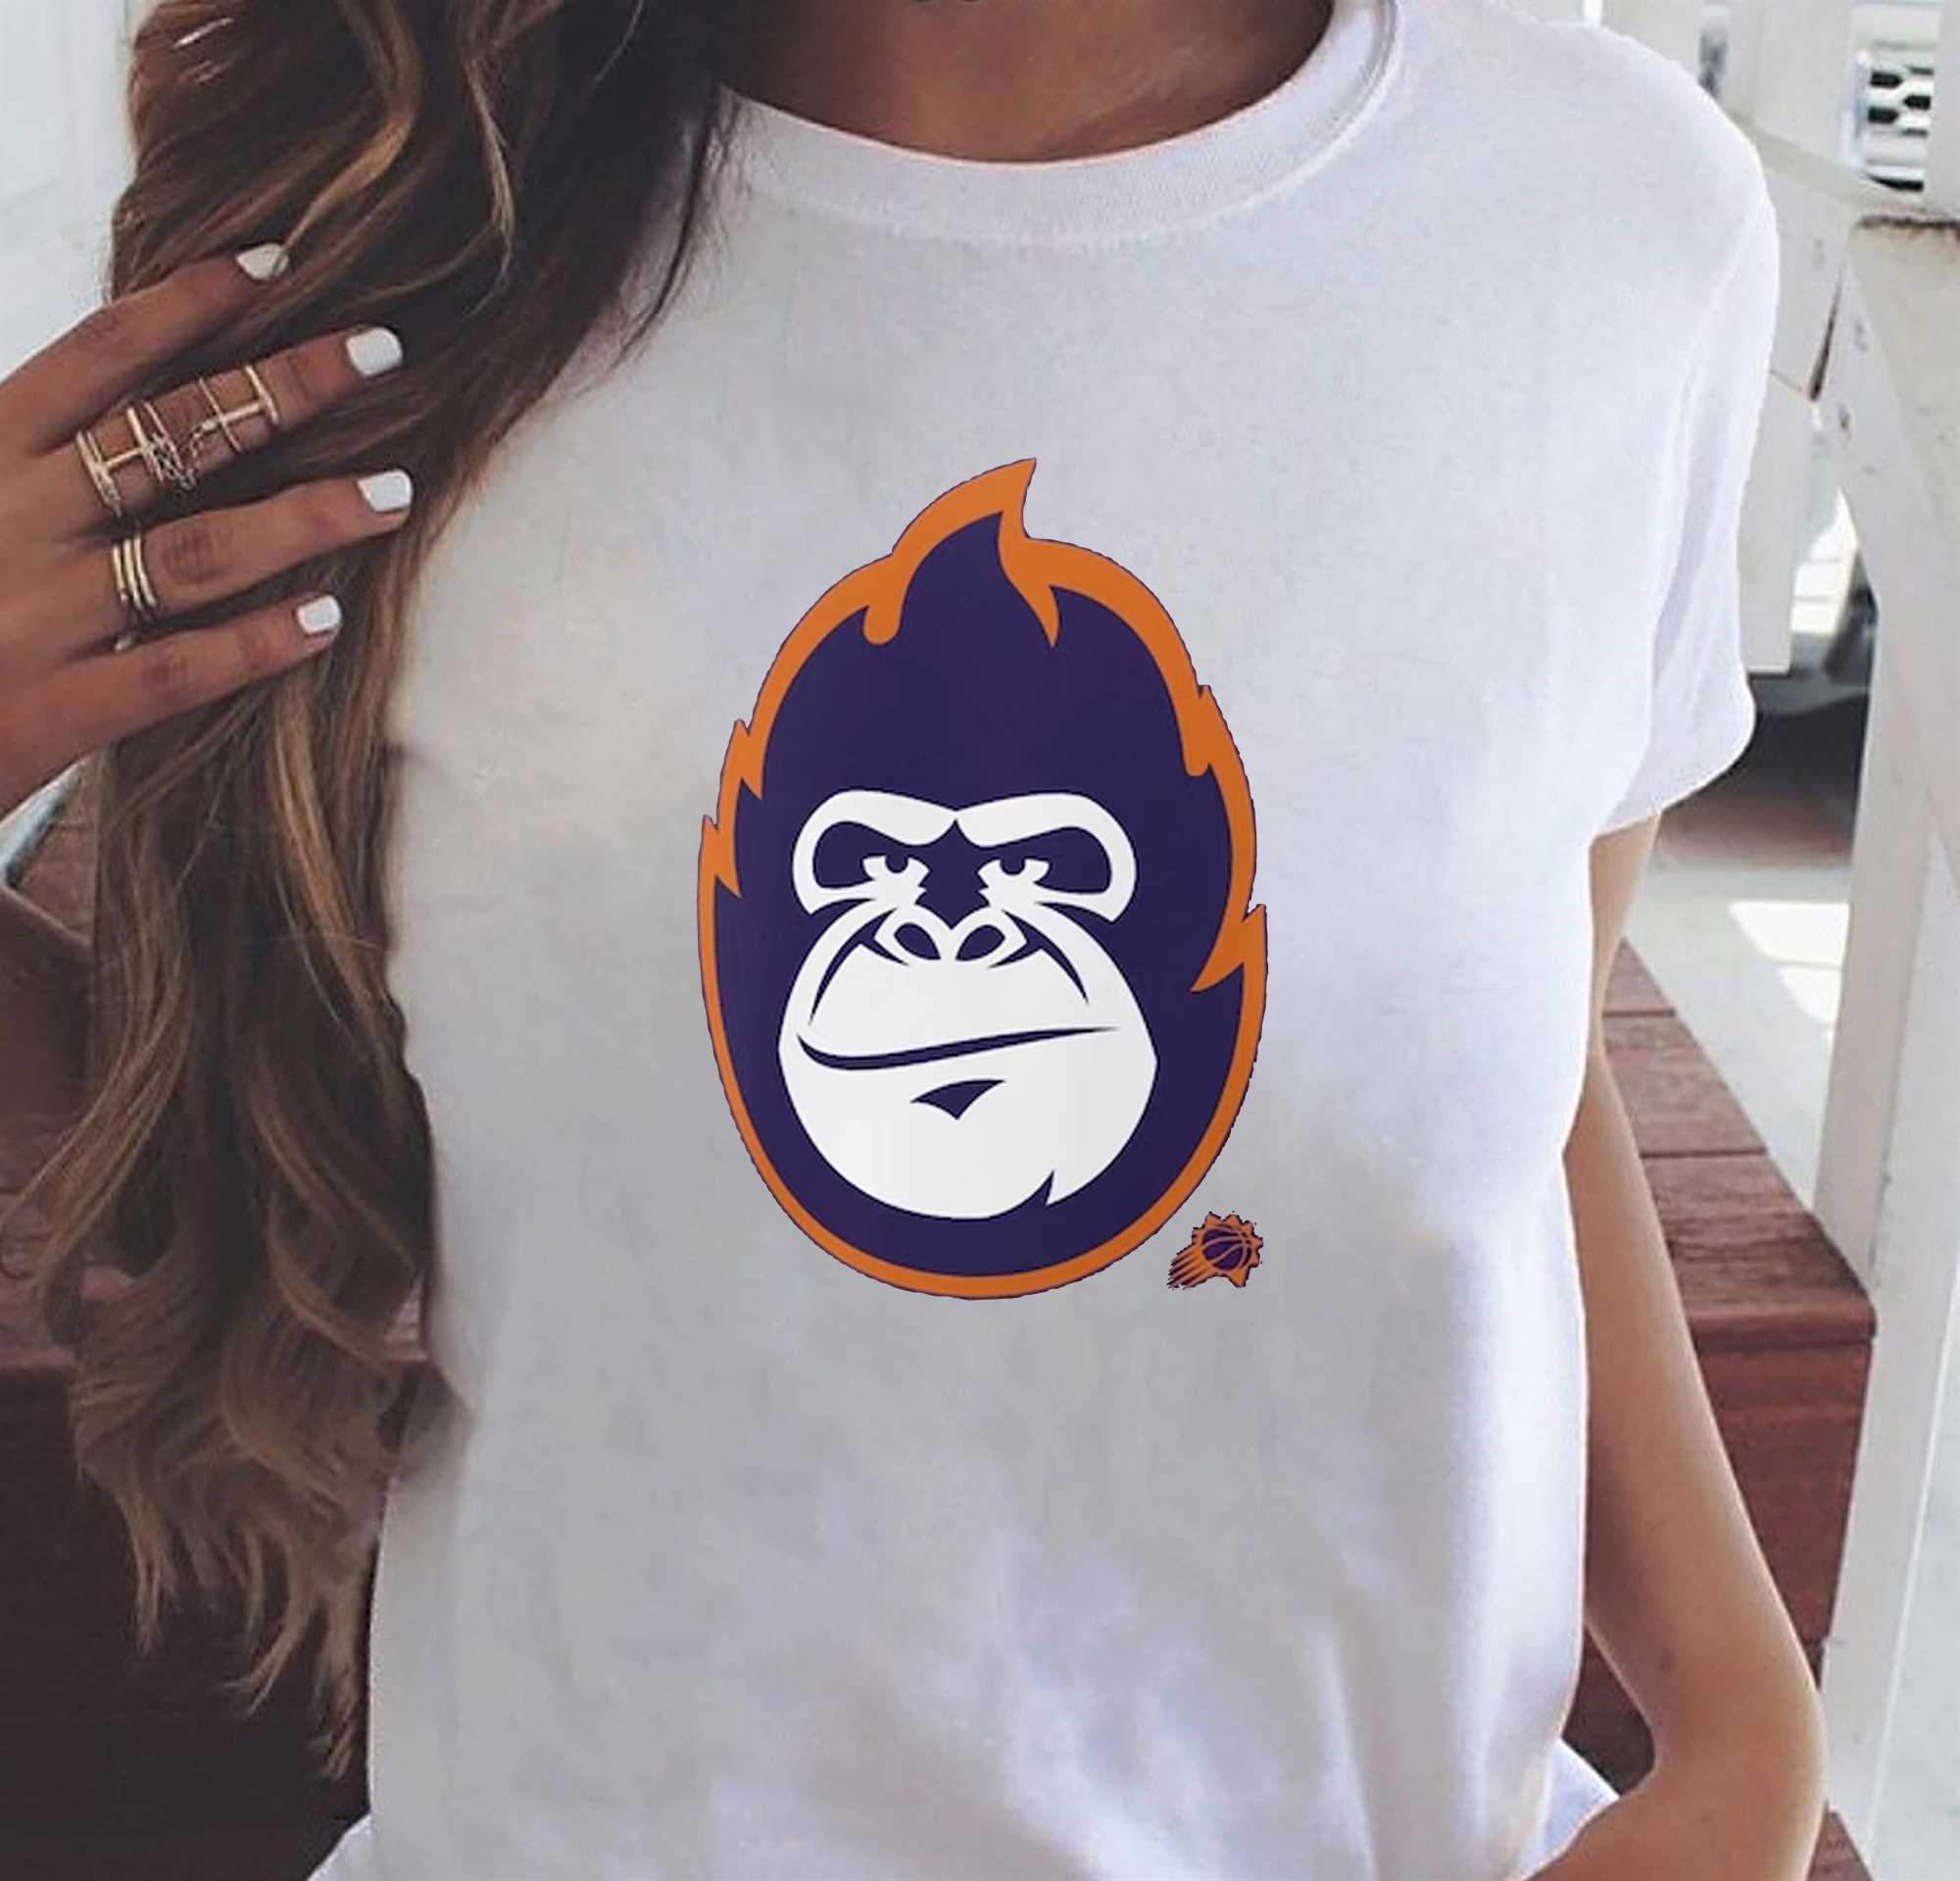 suns gorilla shirt